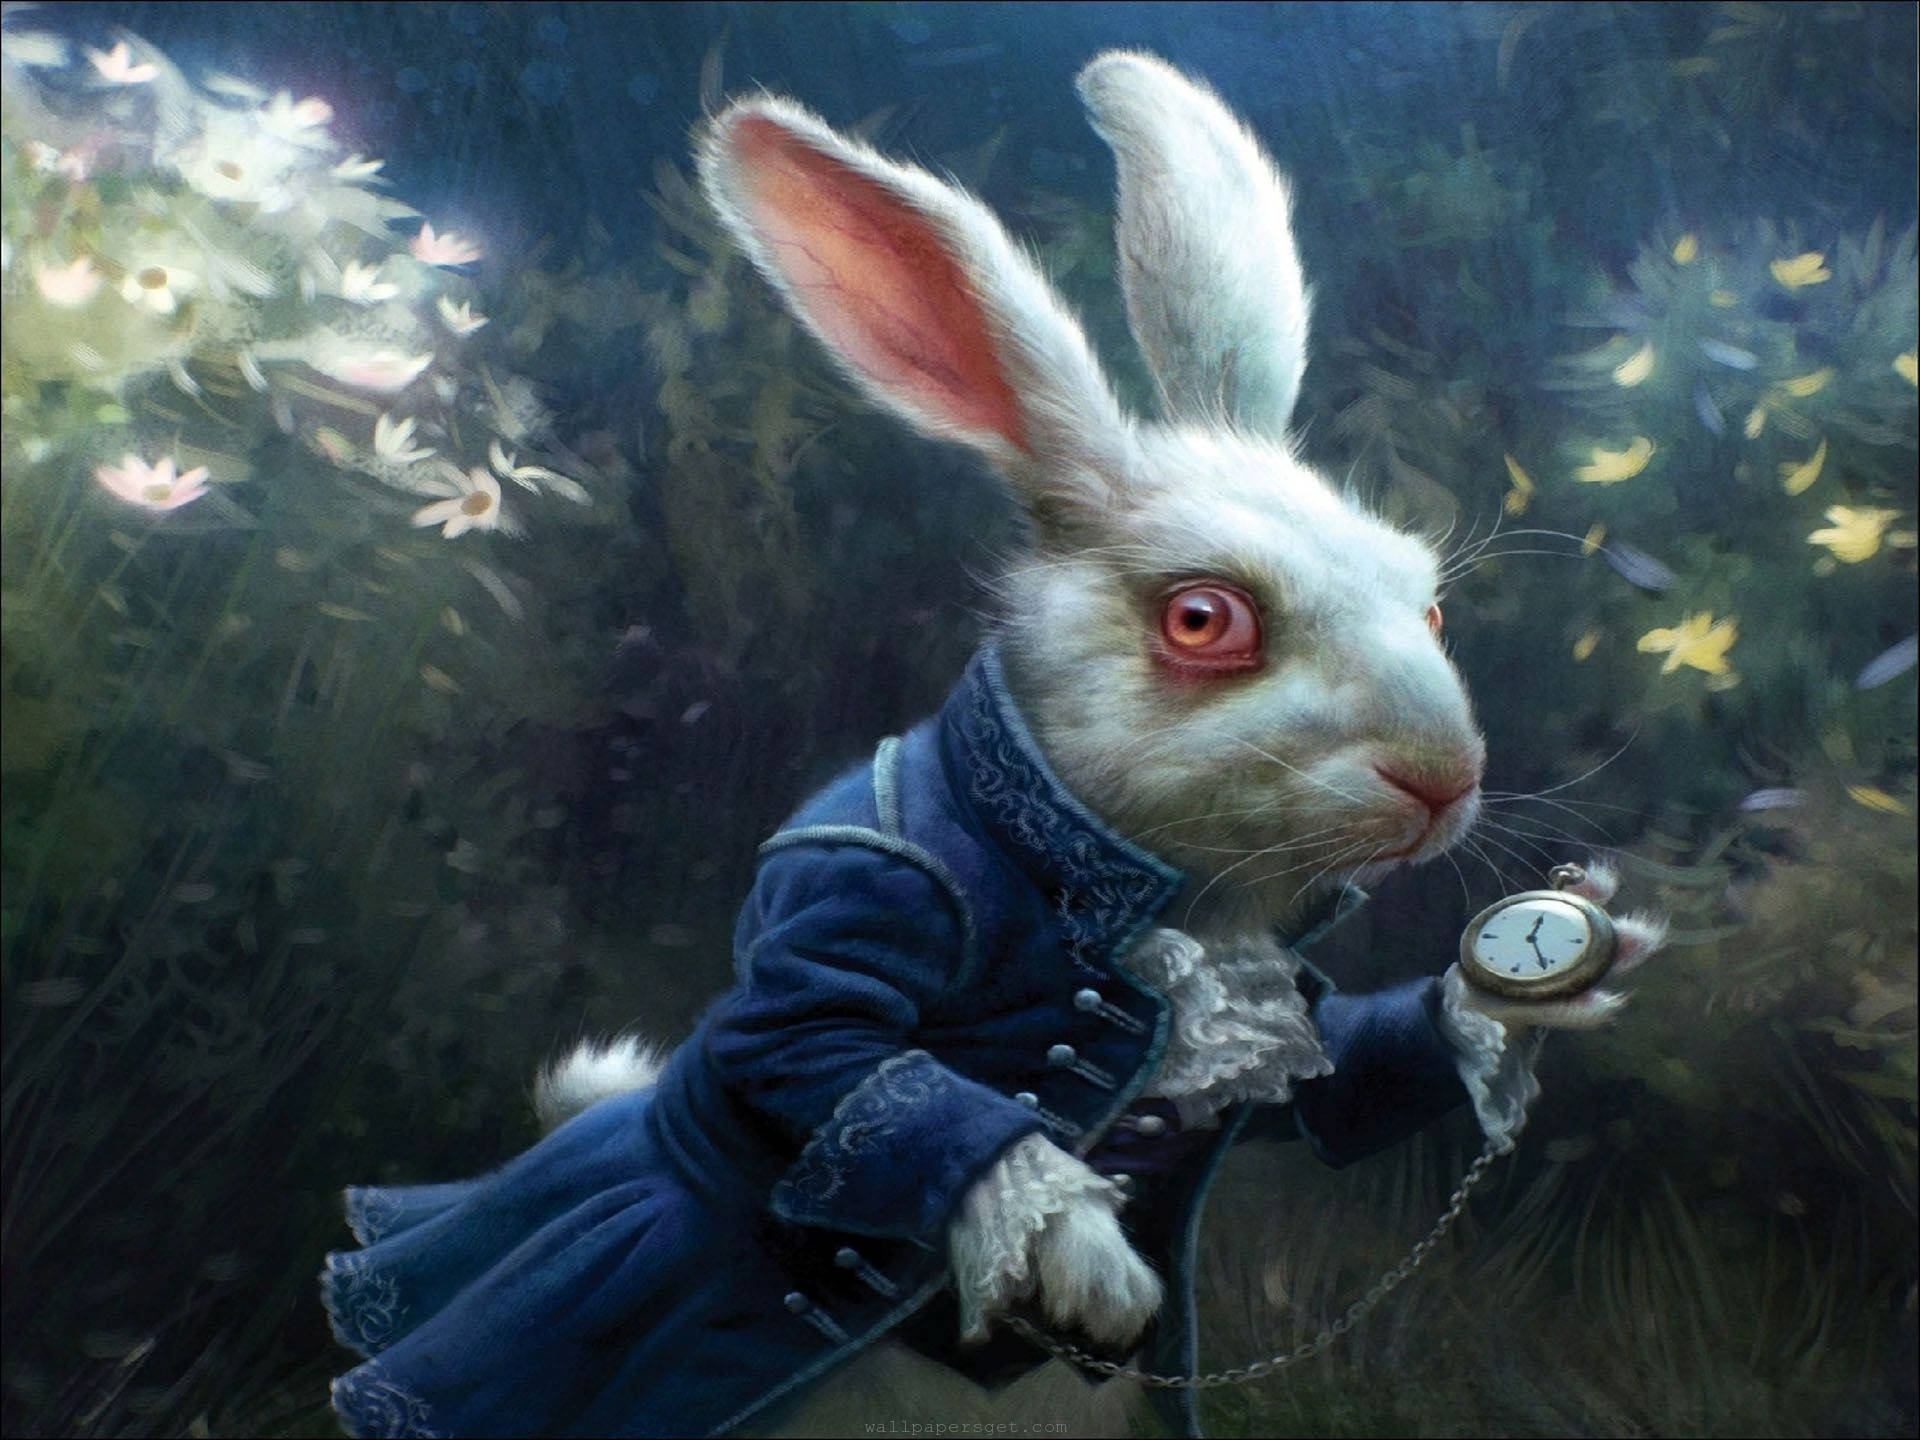  Osterhase Hintergrundbild 1920x1440. Downloaden Aliceim Wunderland's Weißes Kaninchen Wallpaper